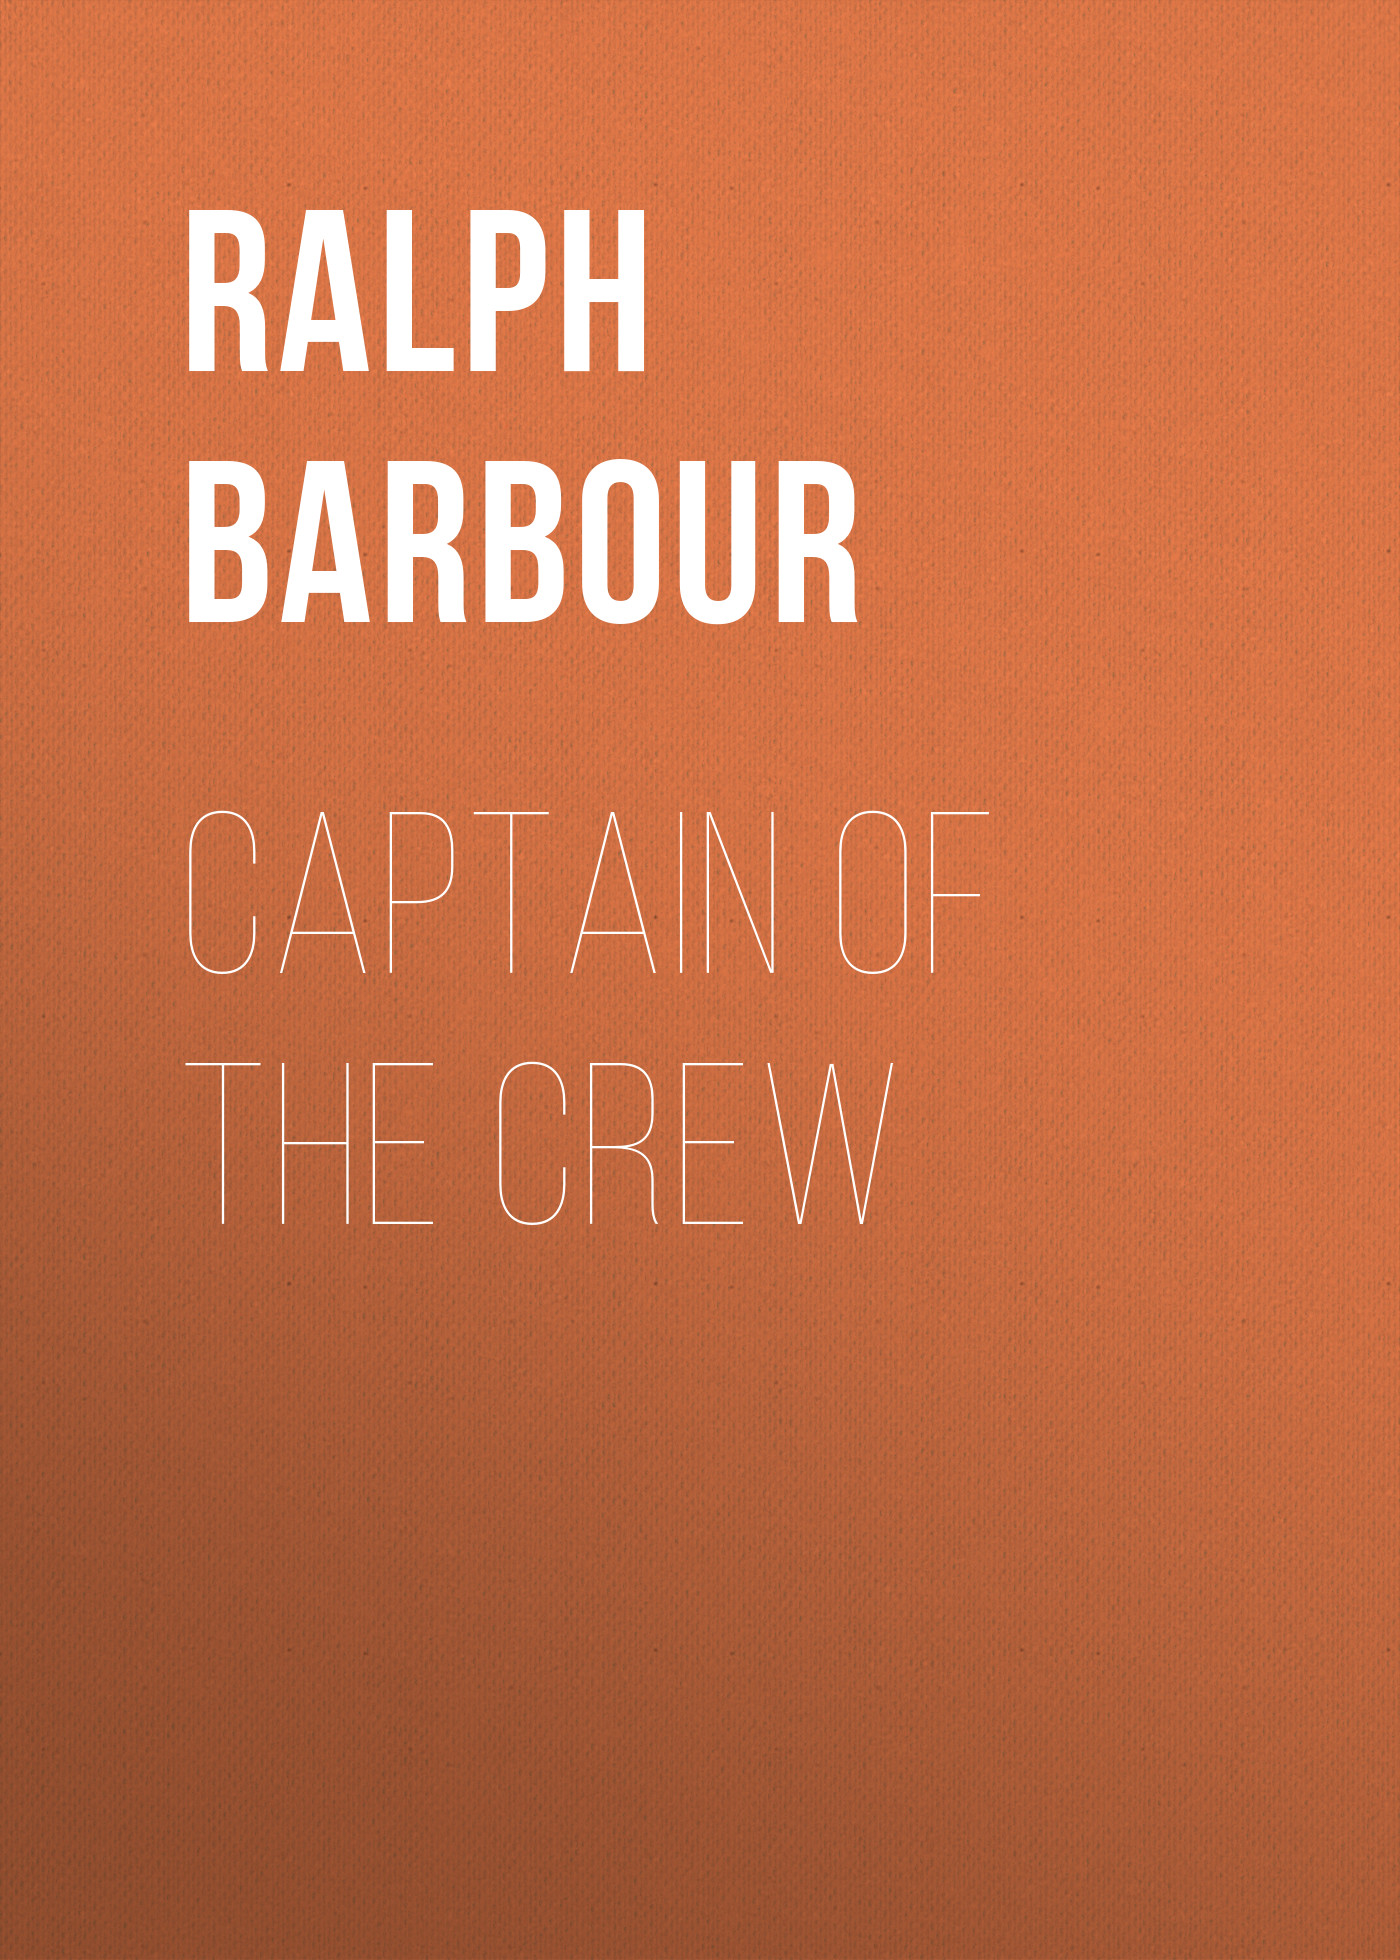 Книга Captain of the Crew из серии , созданная Ralph Barbour, может относится к жанру Зарубежная классика, Зарубежные детские книги. Стоимость электронной книги Captain of the Crew с идентификатором 23154755 составляет 5.99 руб.